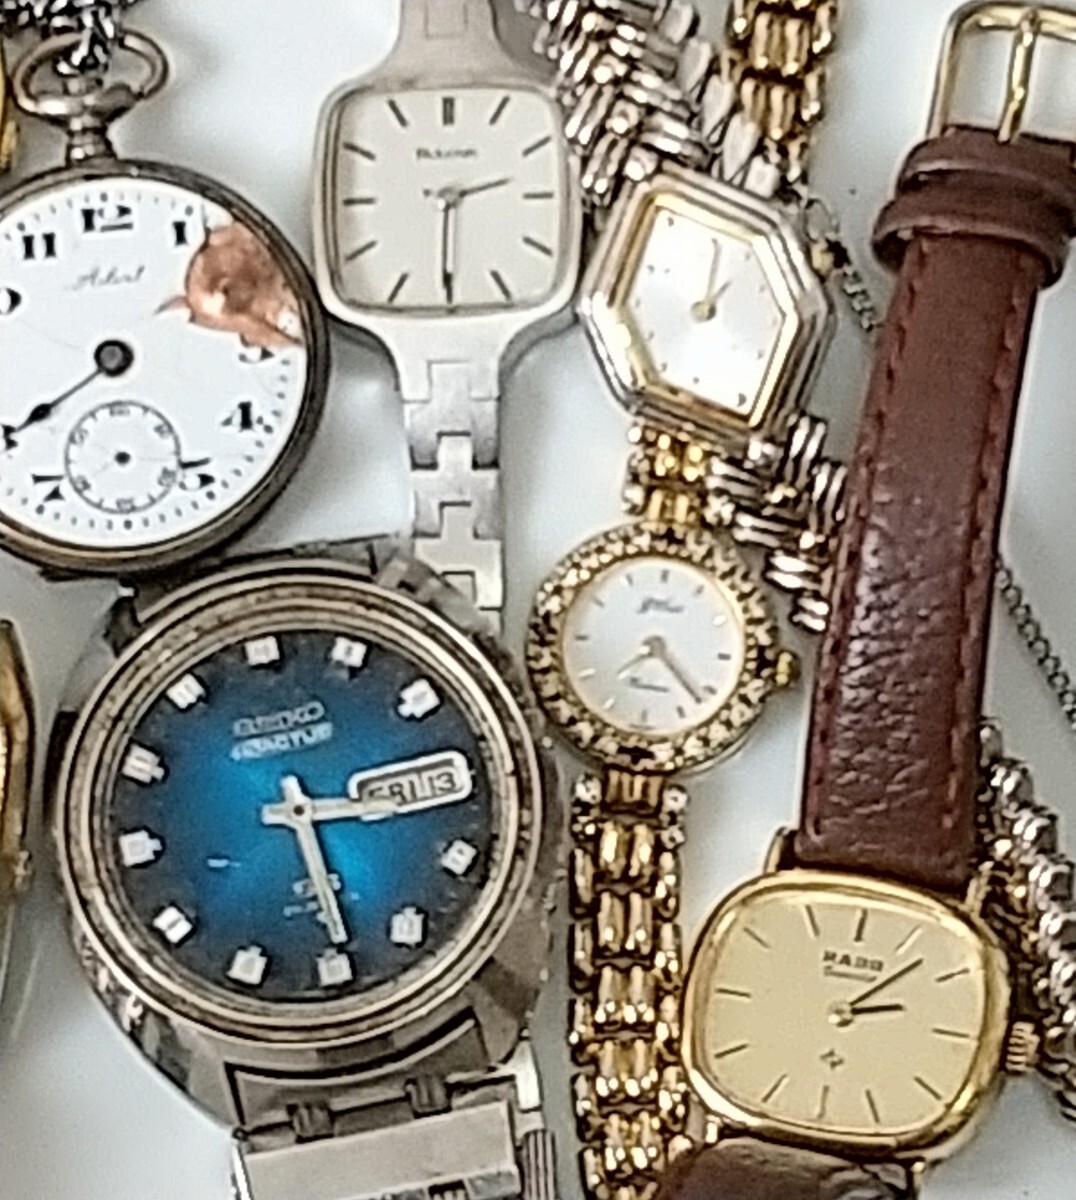 ジャンク 腕時計 SEIKO CHRONO 7T92 5 ACTUS SS ALBA SOLAR V147, RADO, BULOVA, SWATCH, CASIO World Time ,他 計70個 まとめての画像6